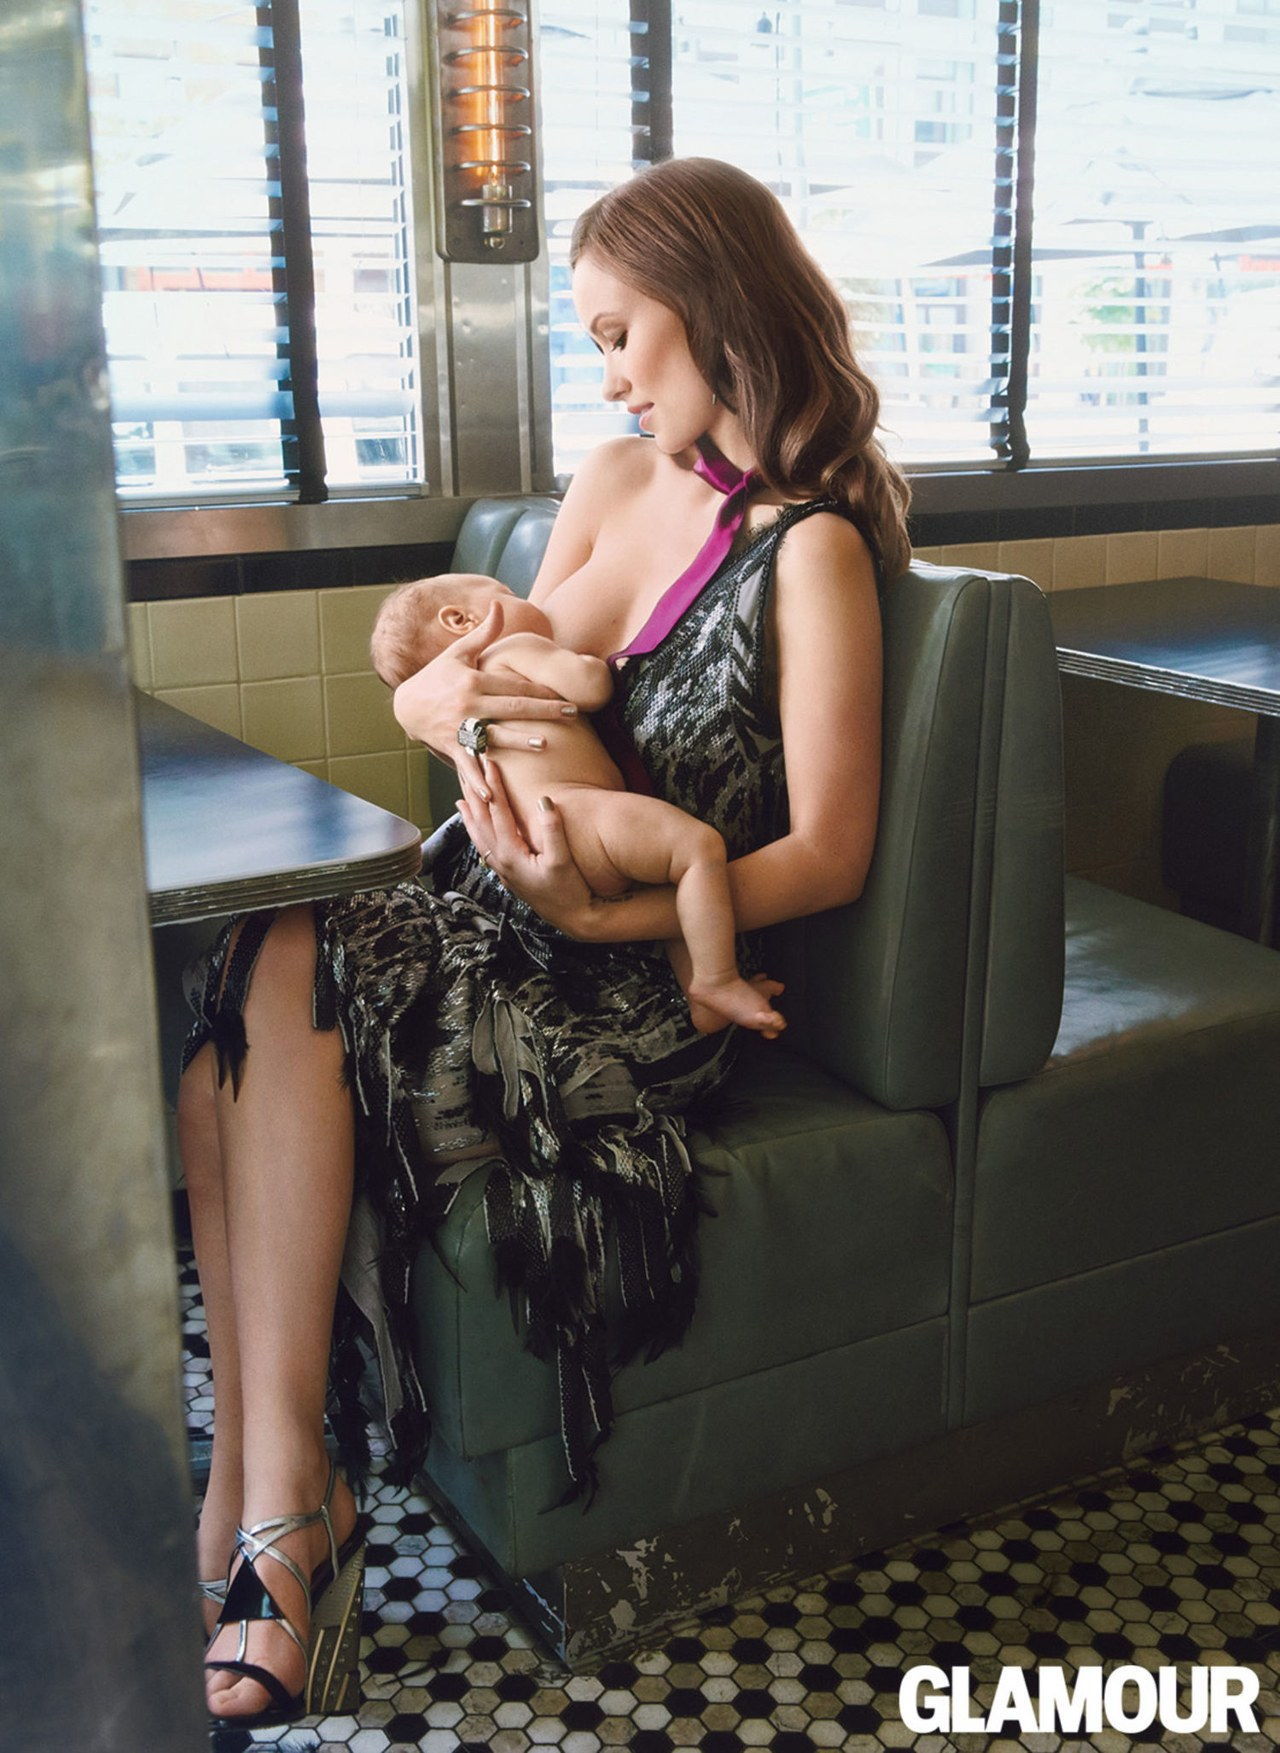 奥利维亚 on why it feels natural to be photographed while breast-feeding Otis...